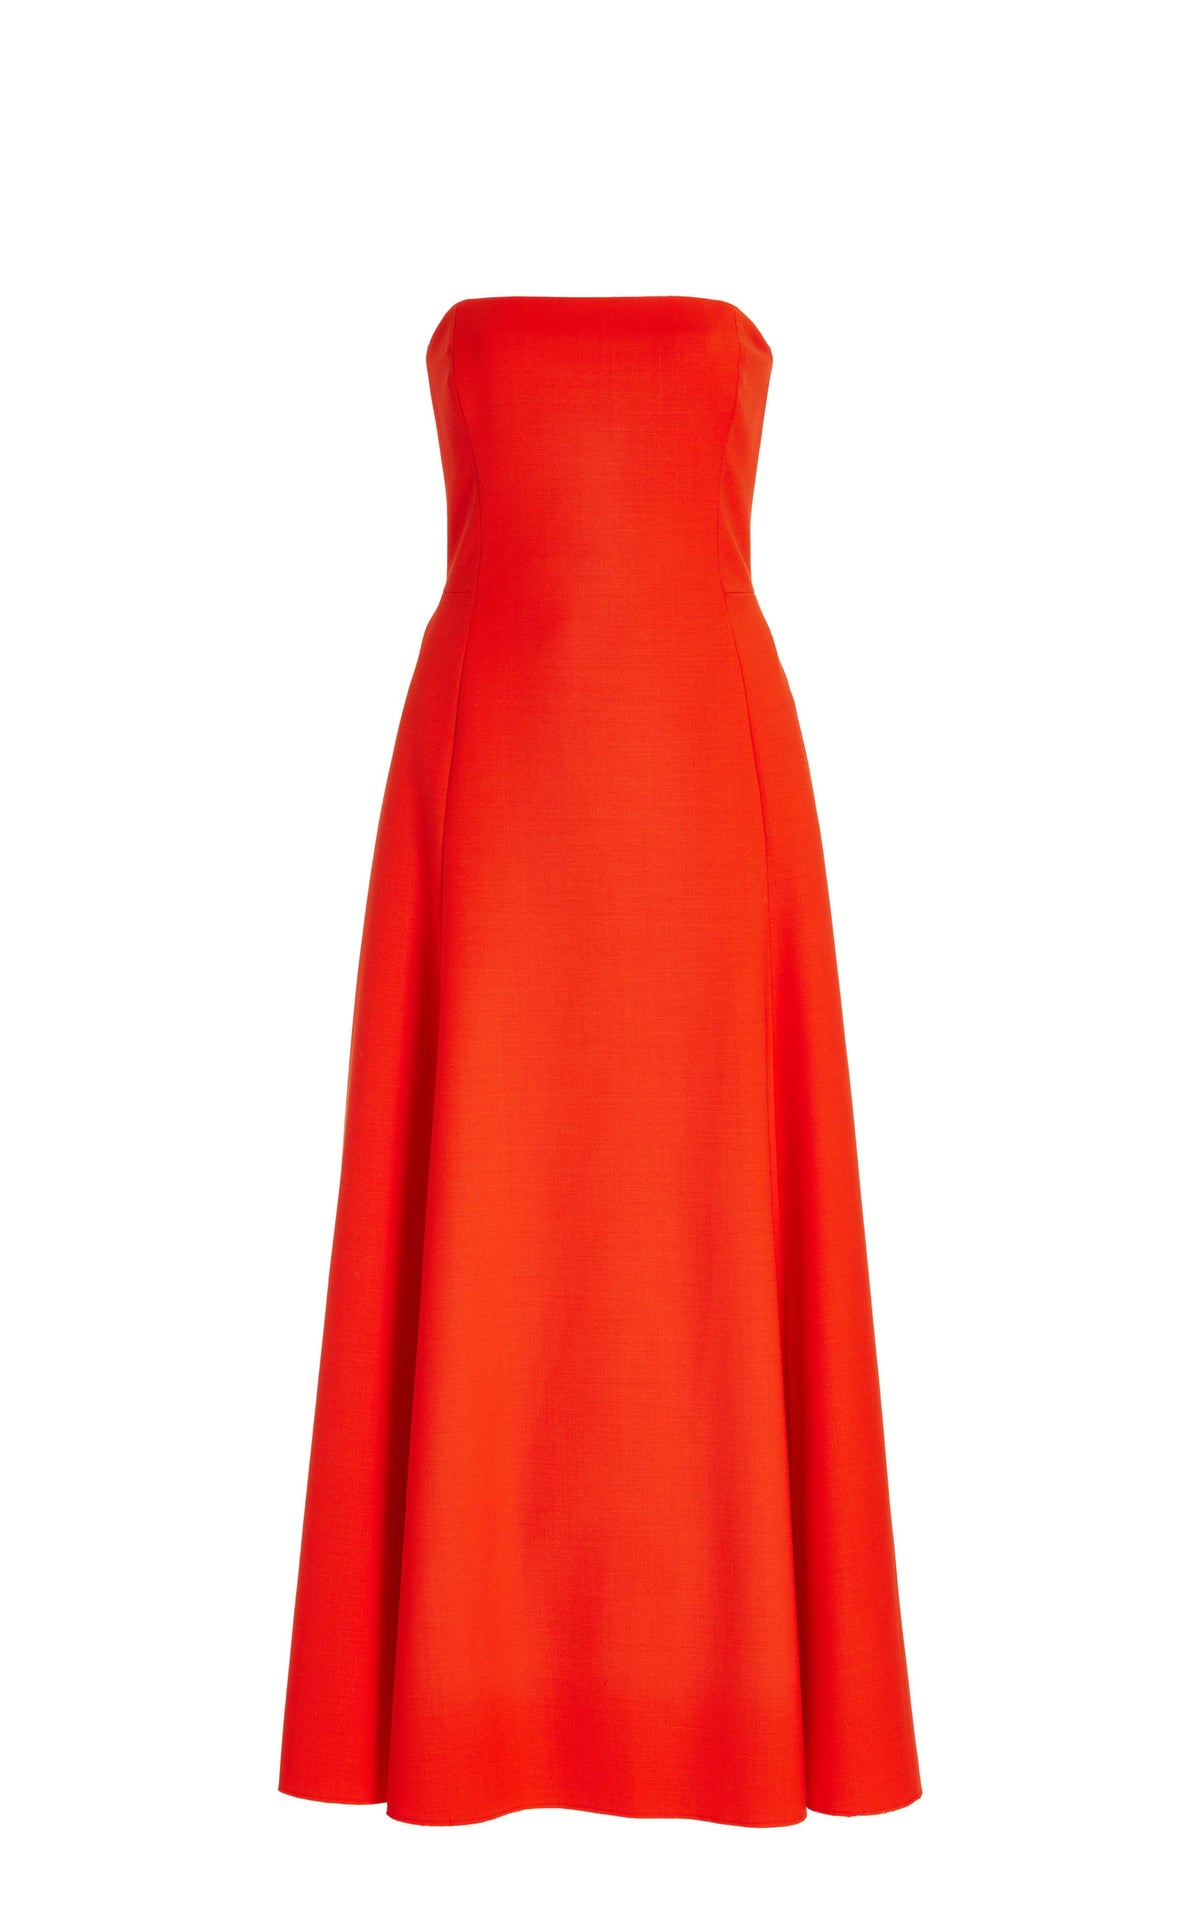 Arion Dress in Tonic Orange Sportswear Wool